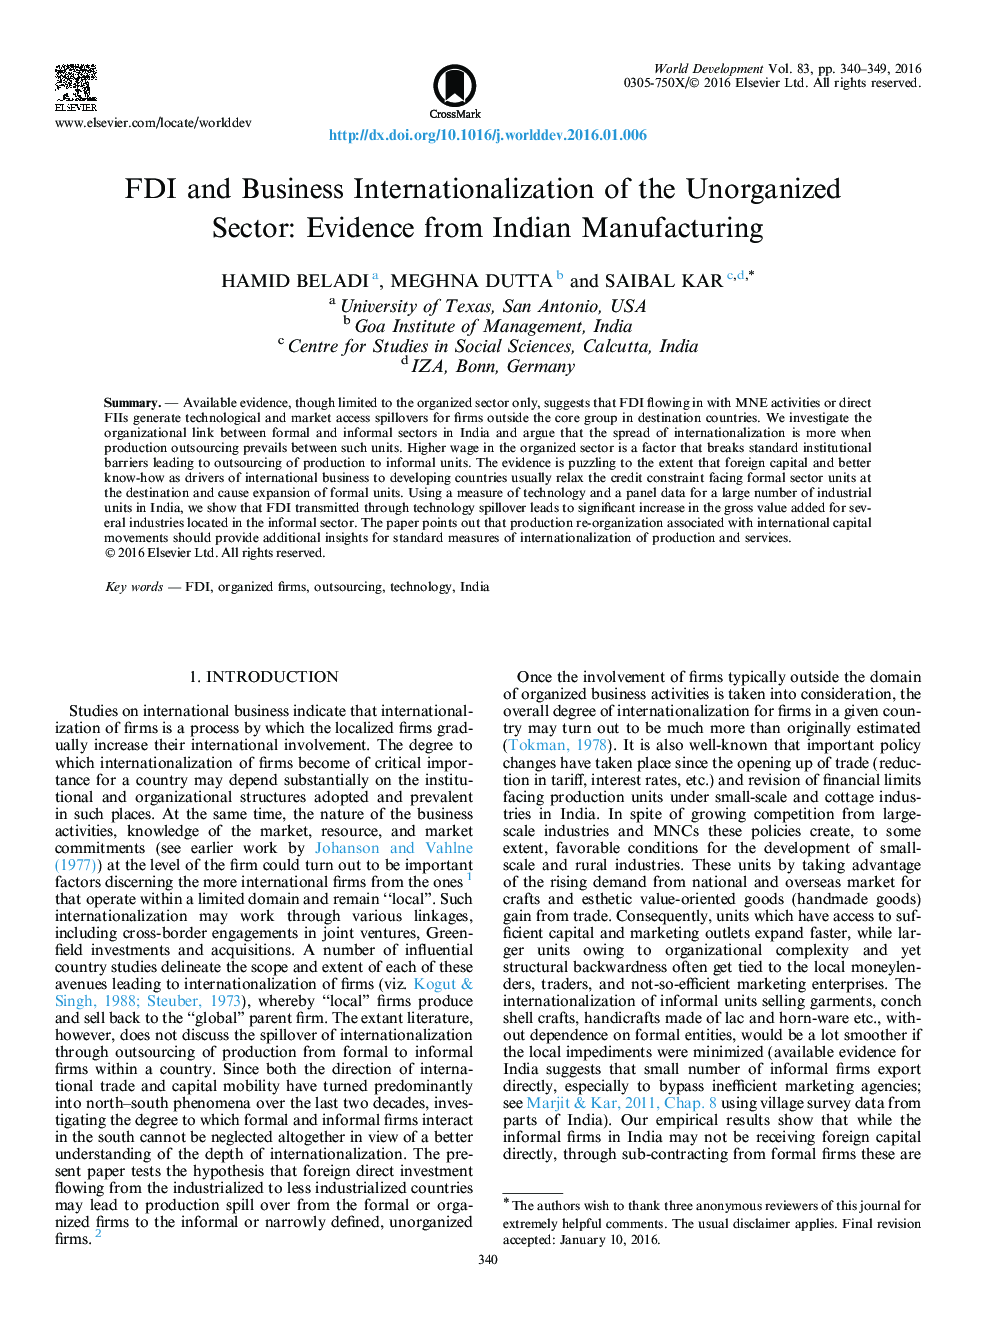 سرمایه گذاری مستقیم خارجی و تجارت بین المللی بخش غیر سازمانی: شواهدی از ساخت هند 